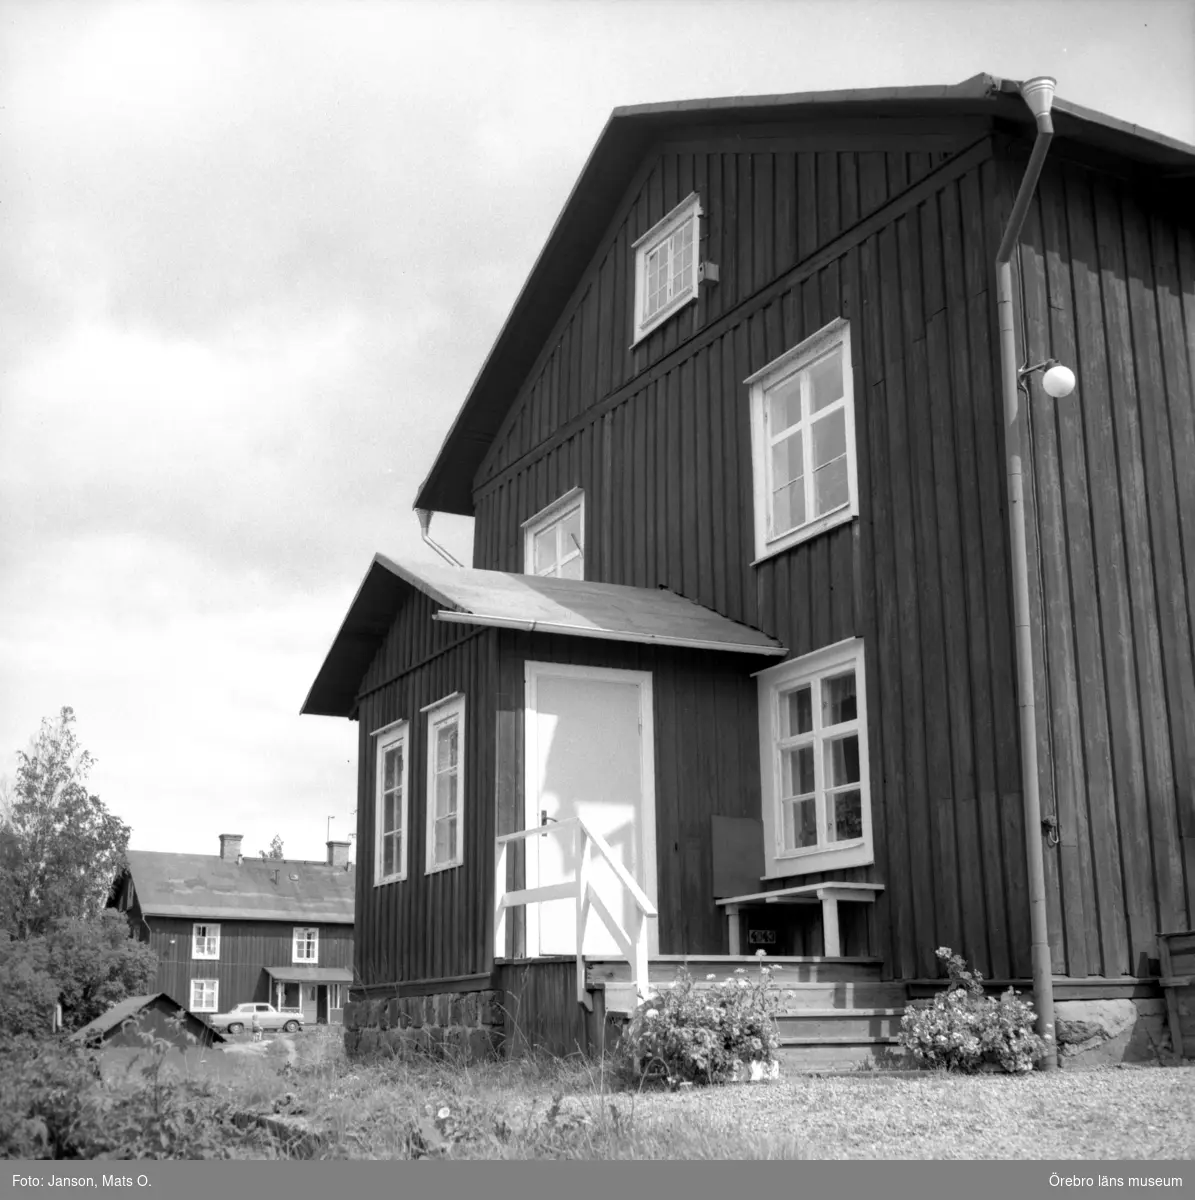 Boforsinventeringen, arbetarbostäder. Gråbo, Korpkullen.
Hus 1003, västra gaveln. I bakgrunden hus 1005.